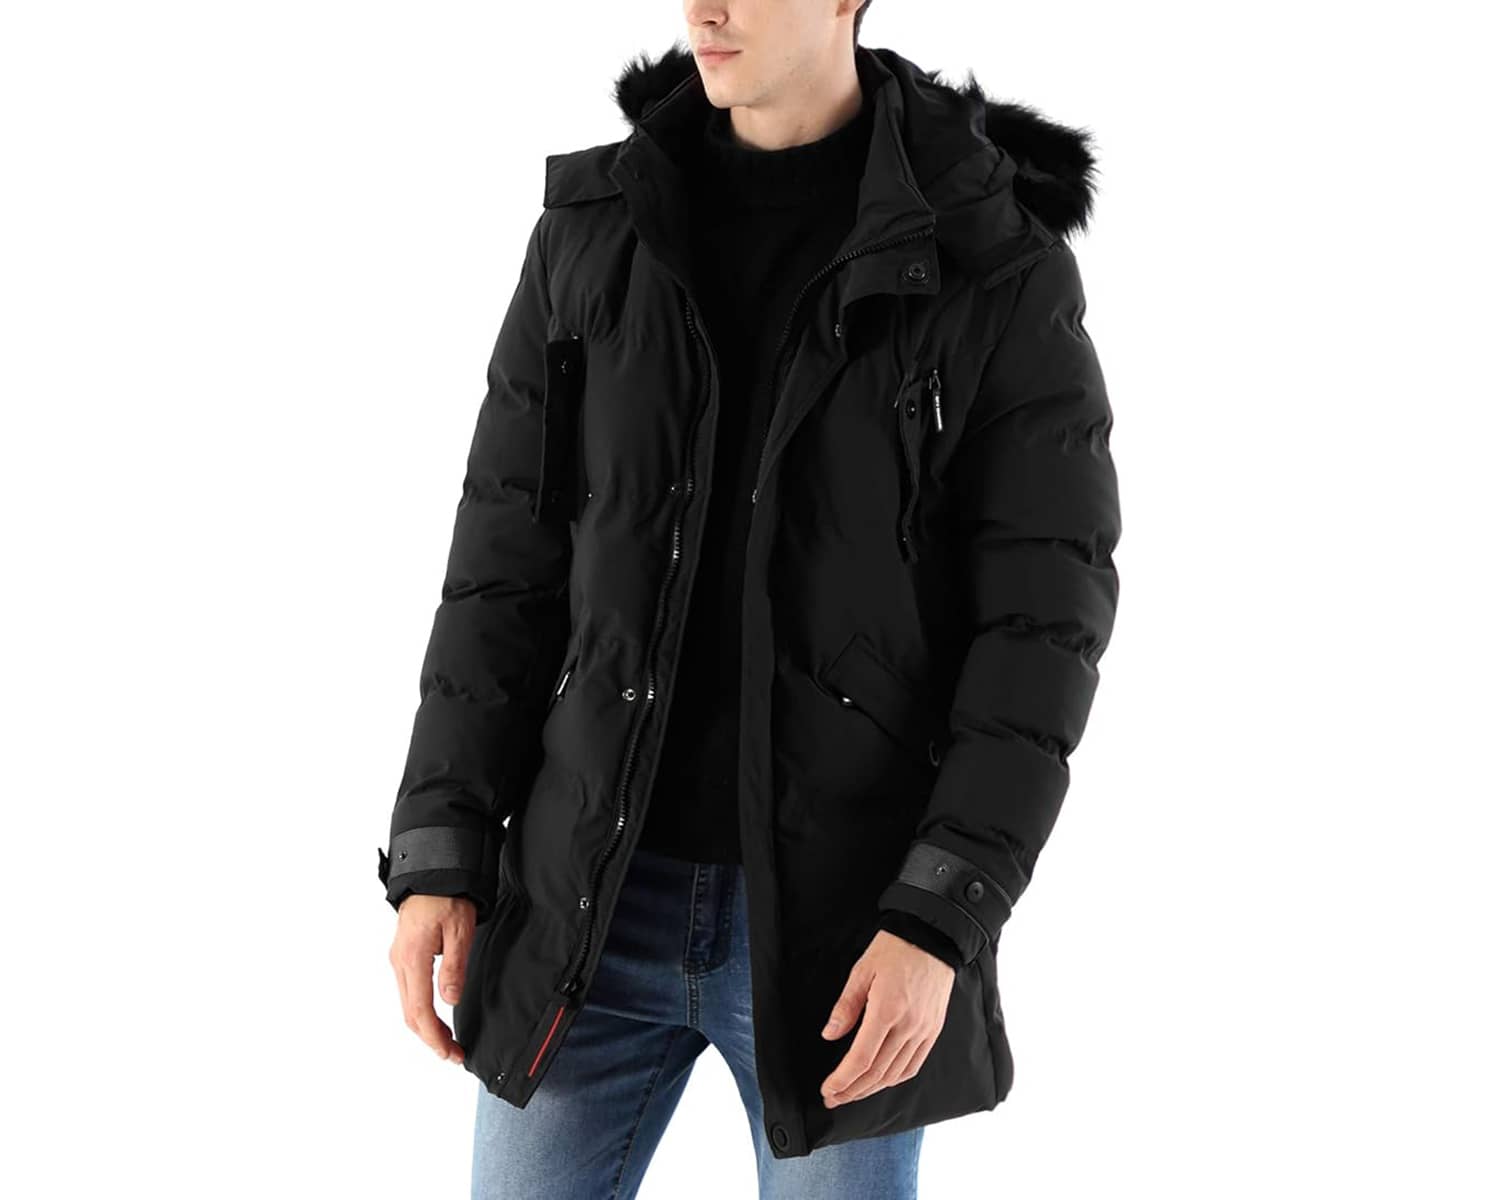 Mens Warm Parka Jacket Anorak Jacket Winter Coat with Detachable Hood Faux-Fur Trim